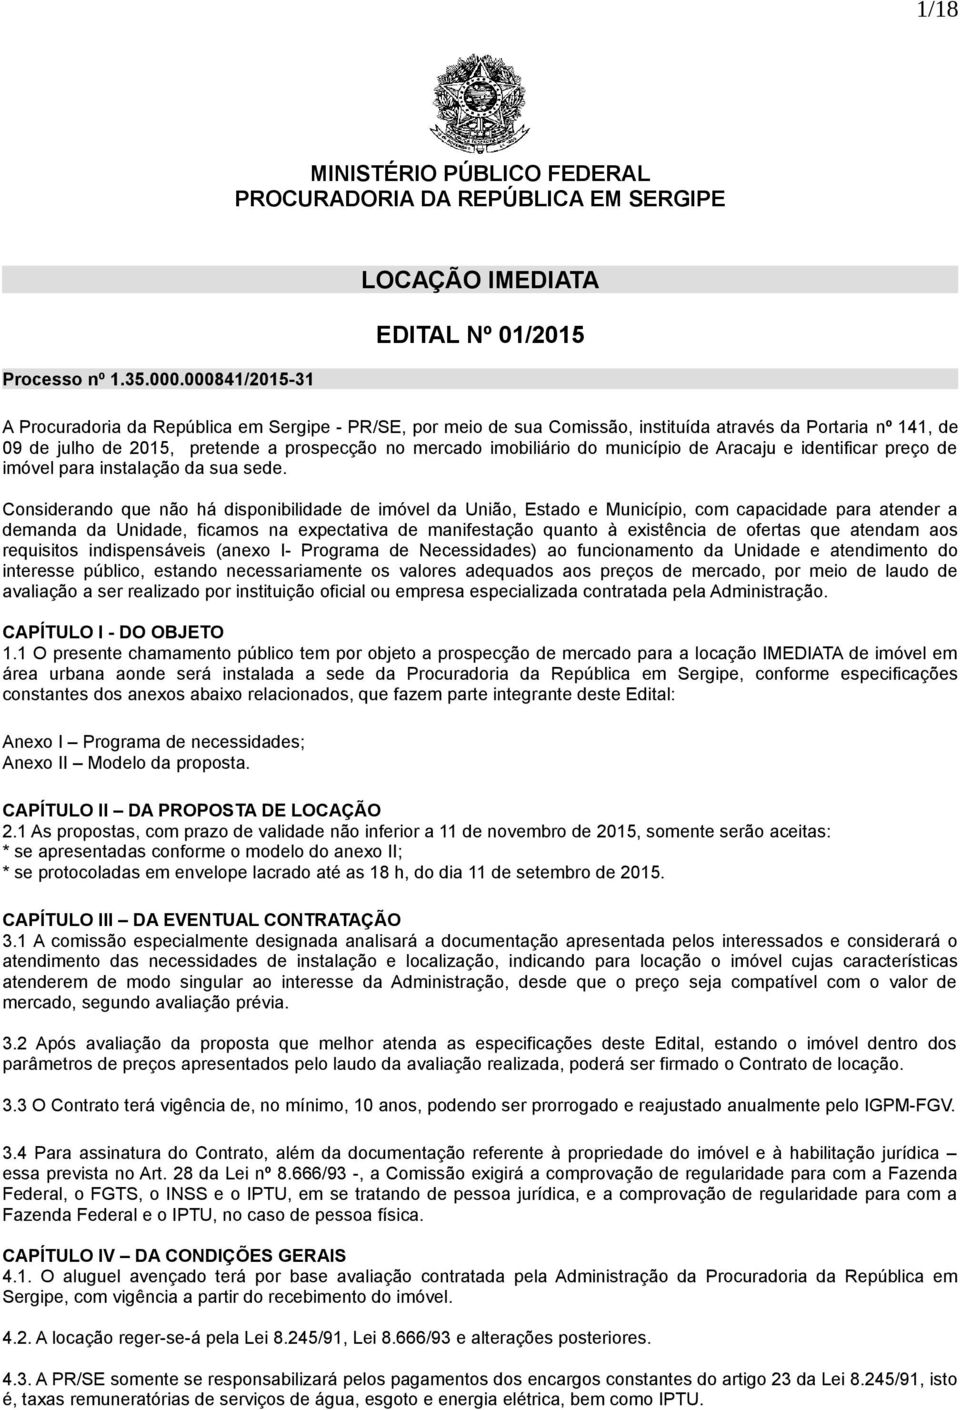 prospecção no mercado imobiliário do município de Aracaju e identificar preço de imóvel para instalação da sua sede.